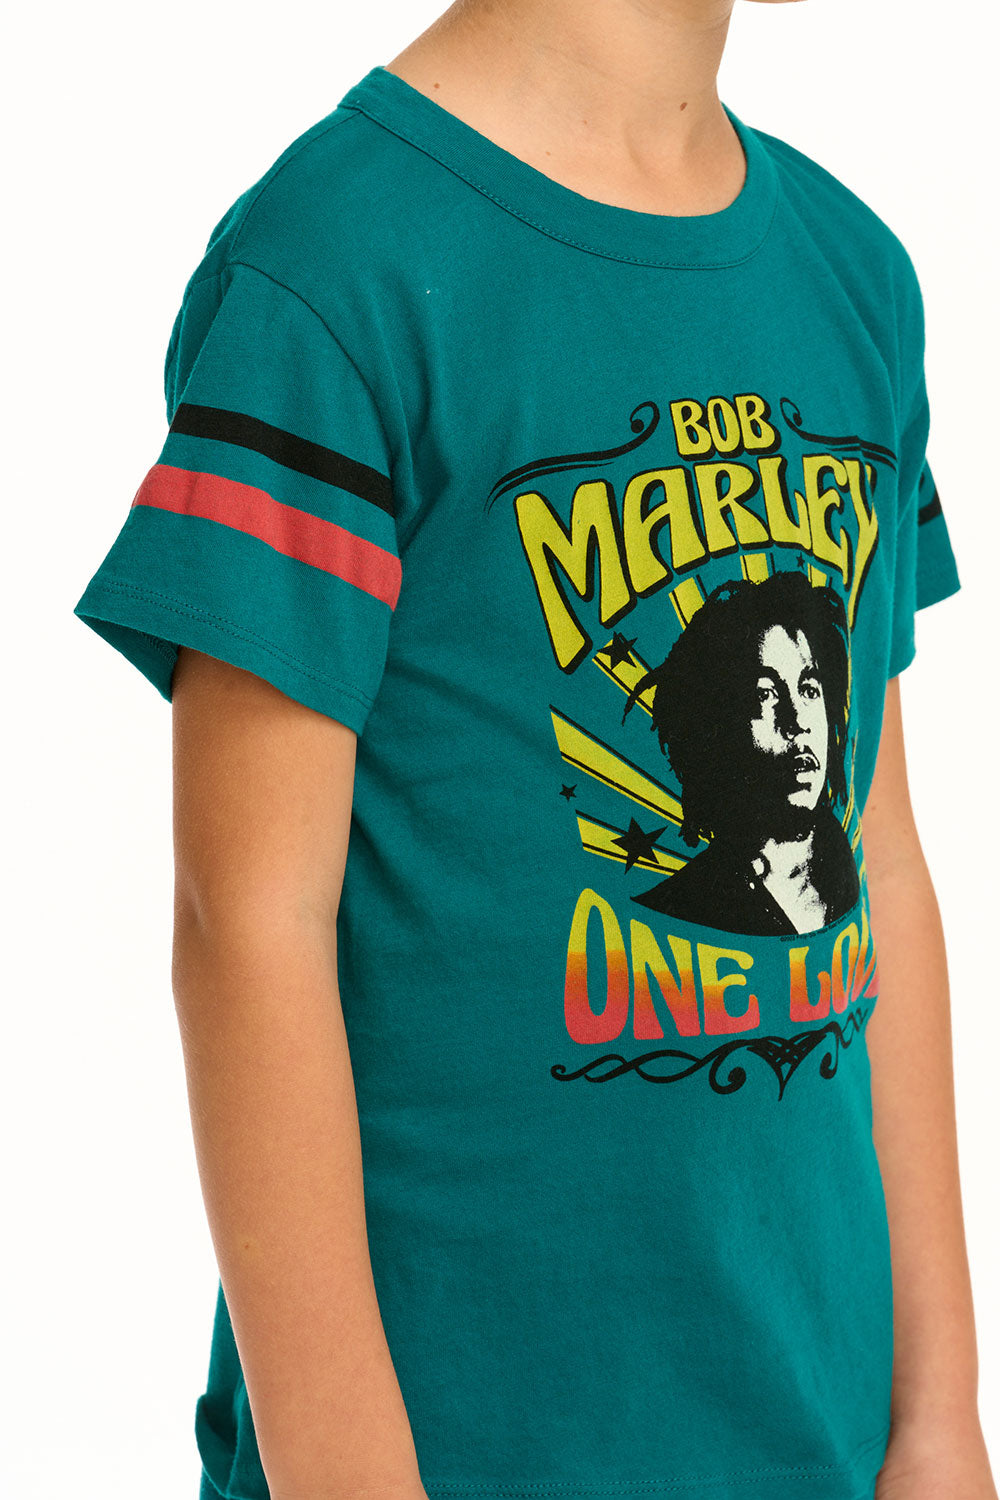 Bob Marley - One Love Tee